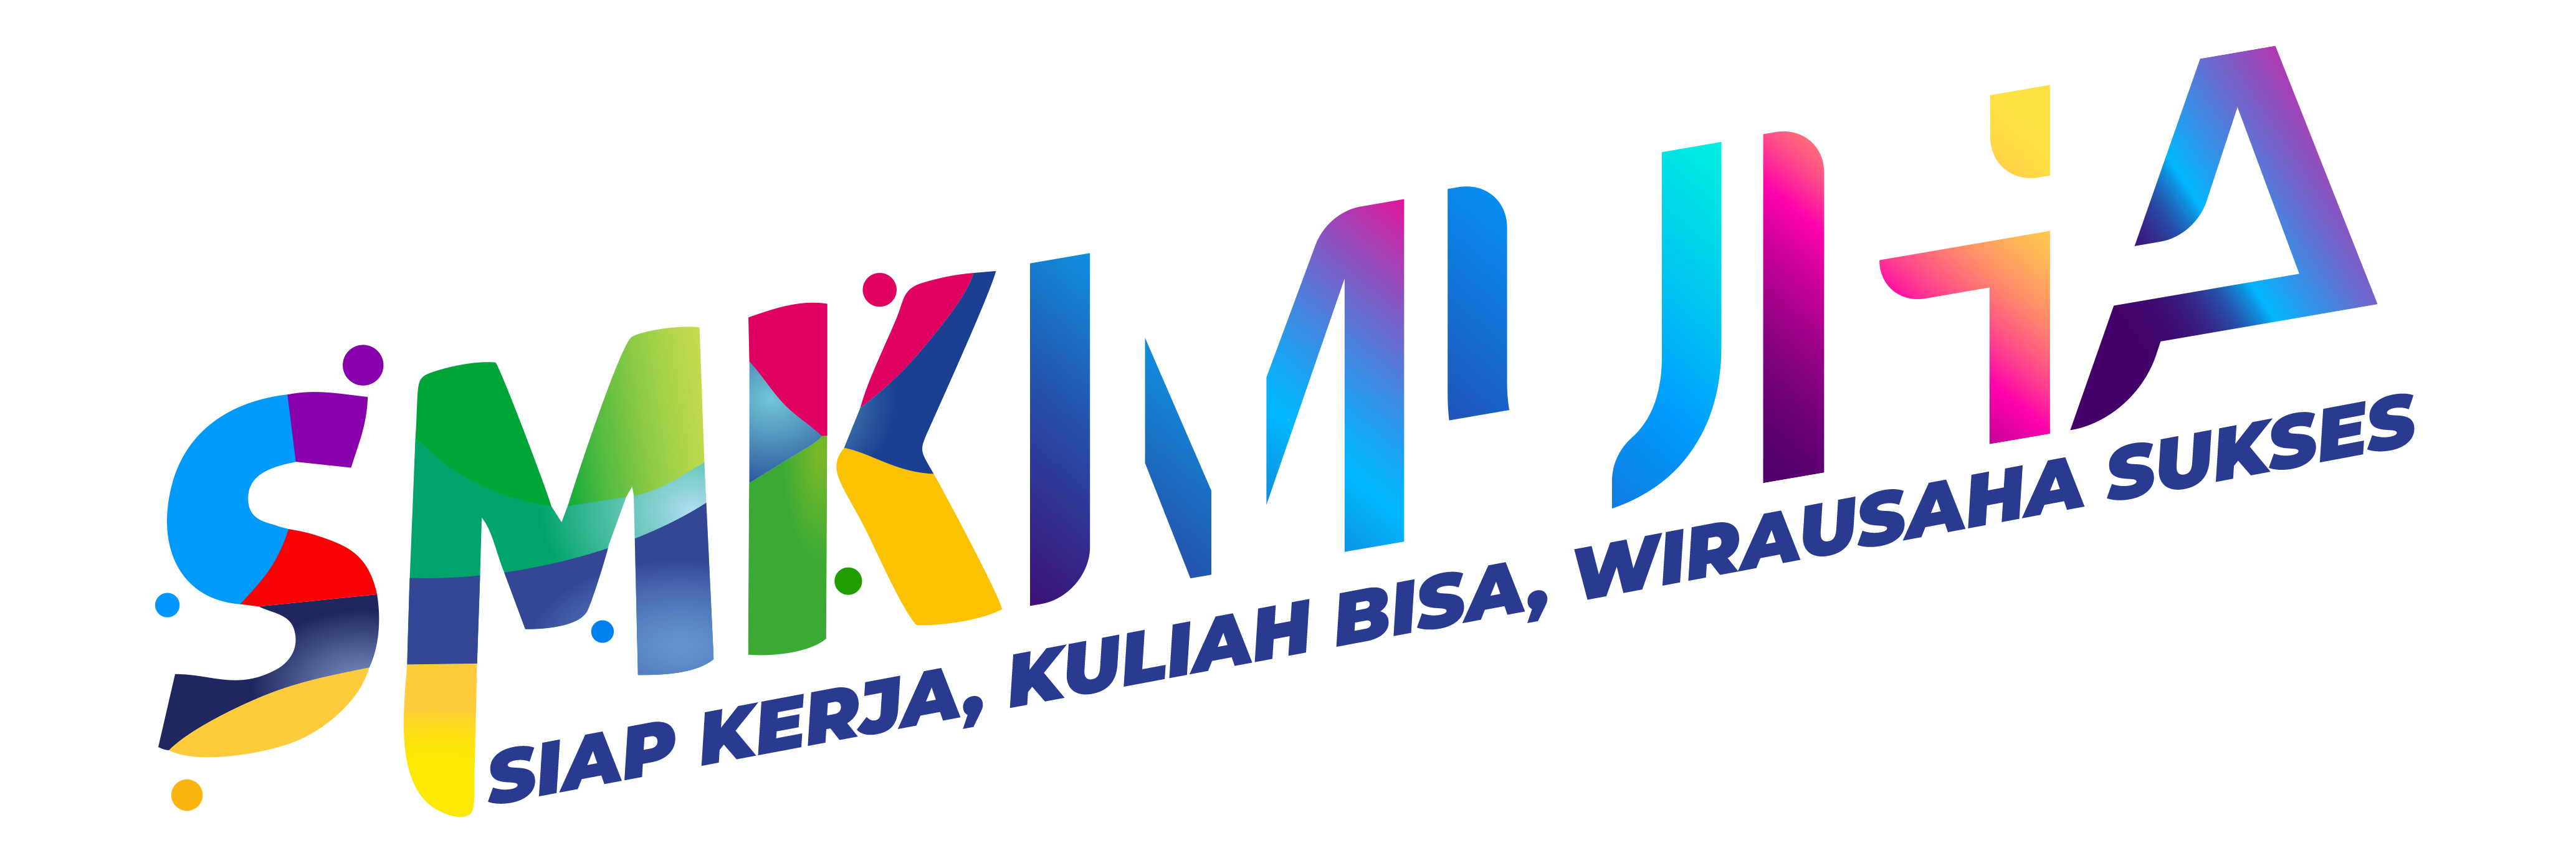 Top Up Game Mobile Legends Fast | SMK Muhammadiyah 4 Jakarta